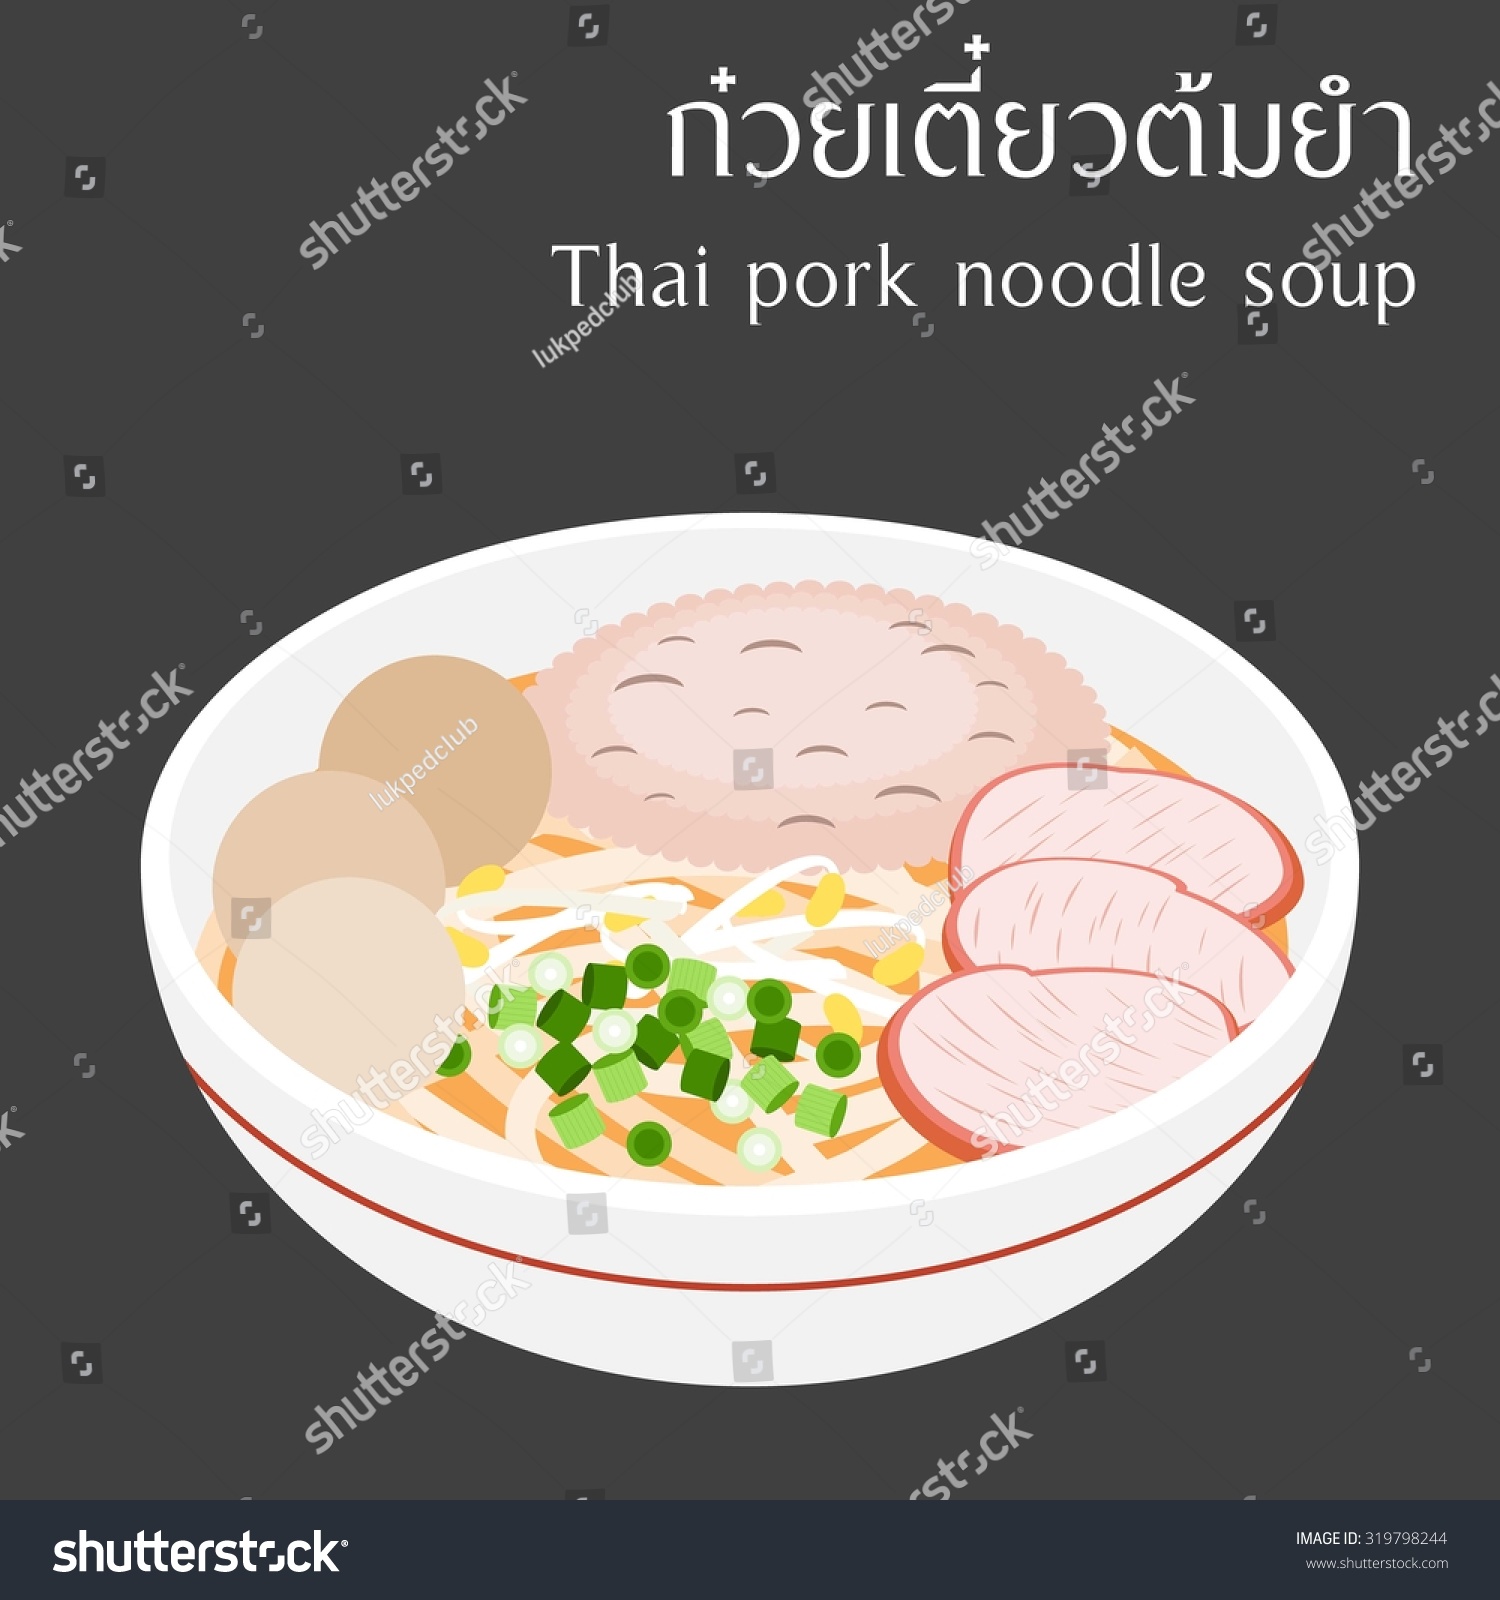 泰国猪肉汤面泰国字母kuai-teaw-tom-yam意味